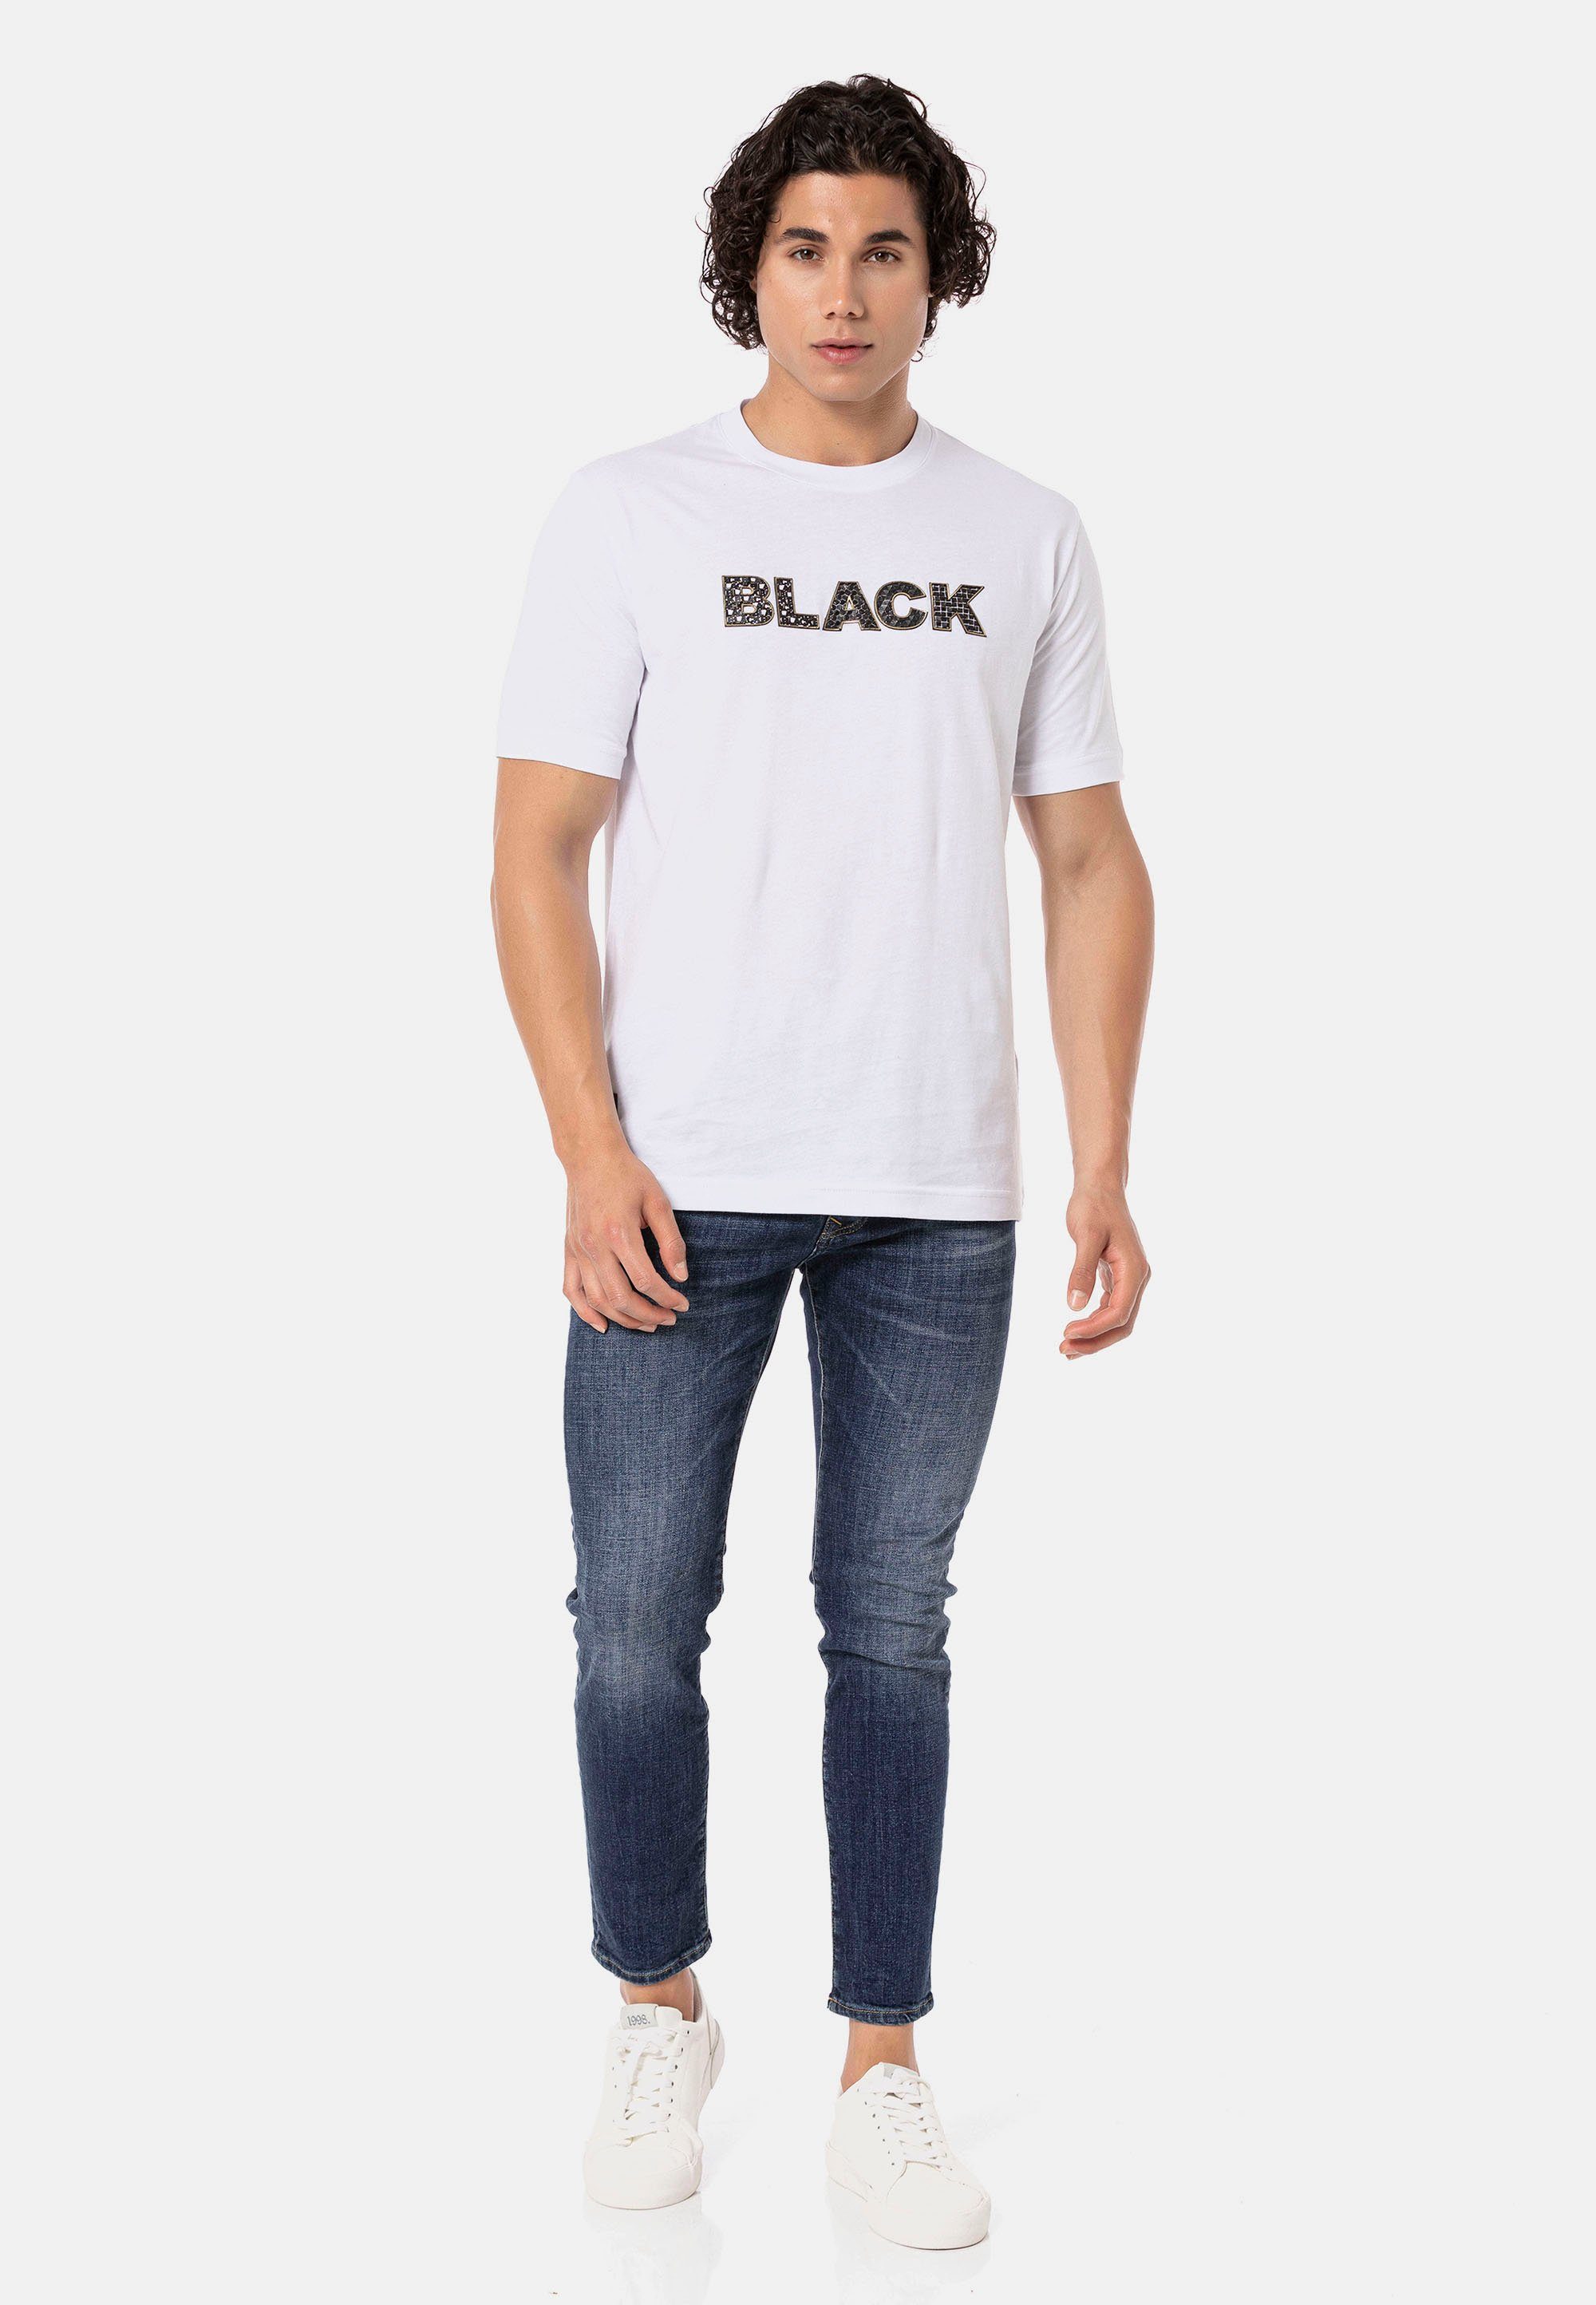 RedBridge T-Shirt Gern Print hochwertigen mit weiß